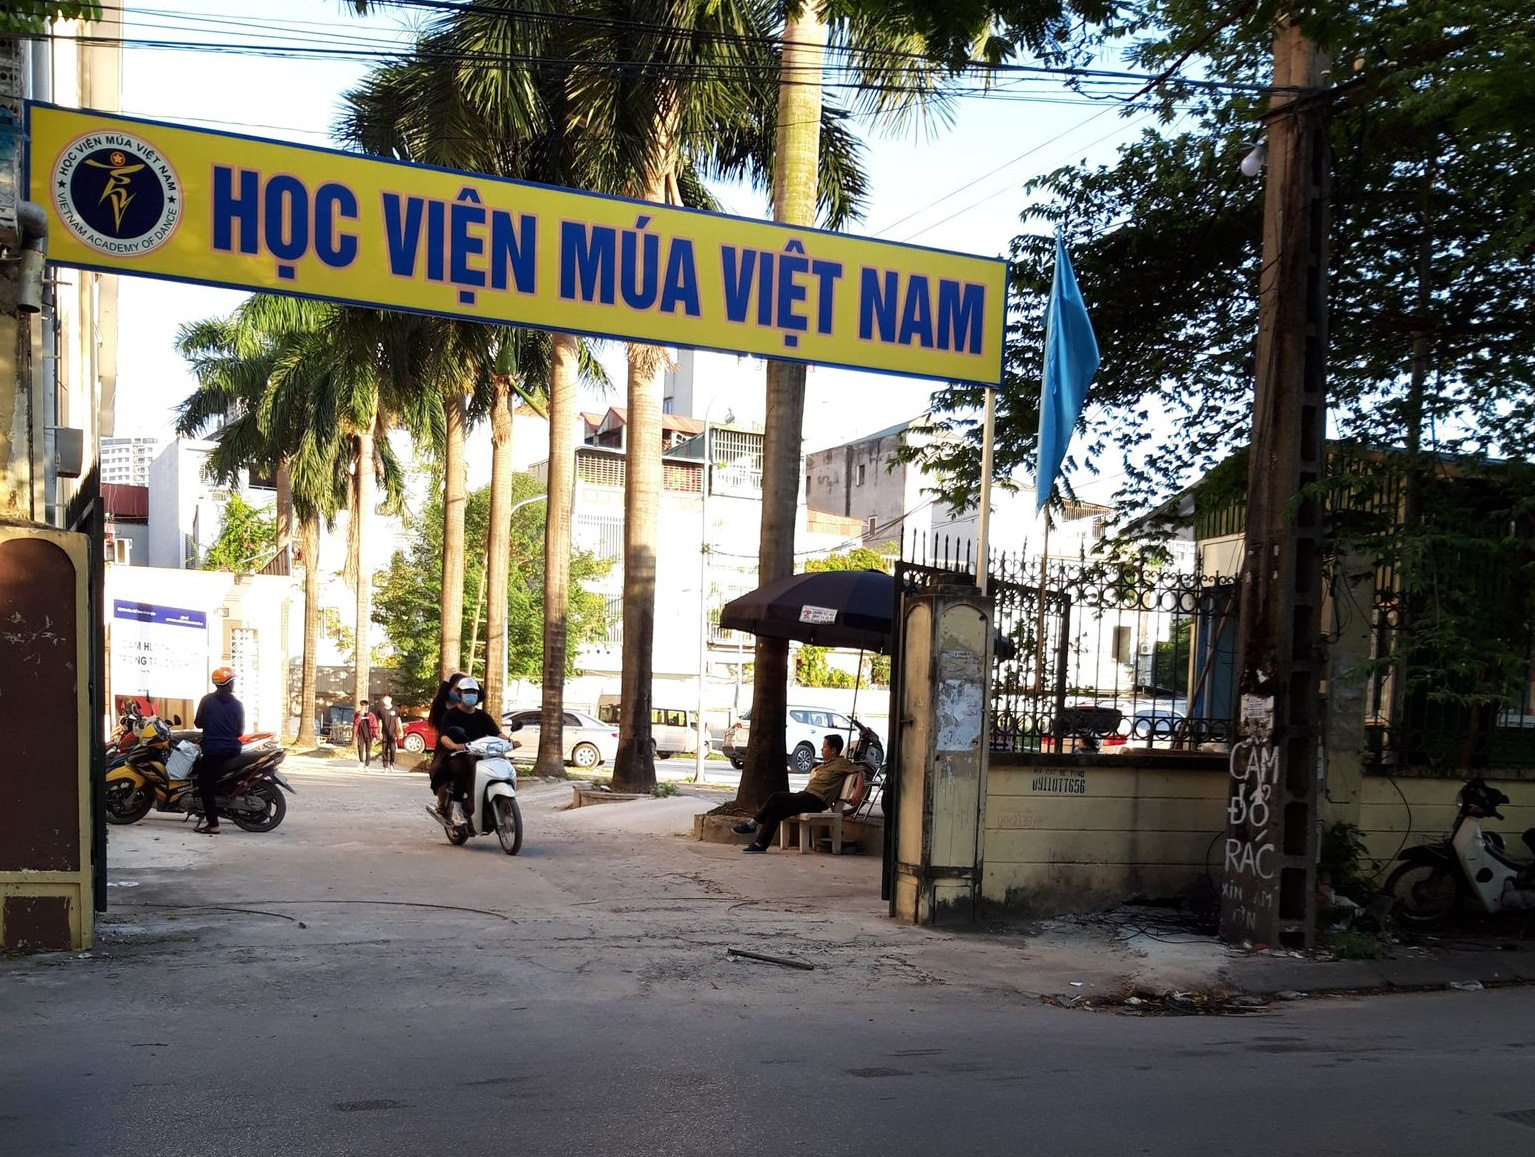 Ba Nữ Sinh Đỗ Đại Học Sân Khấu - Điện Ảnh Nguy Cơ Trượt Vì Học Viện Múa  Việt Nam “Giam” Bằng